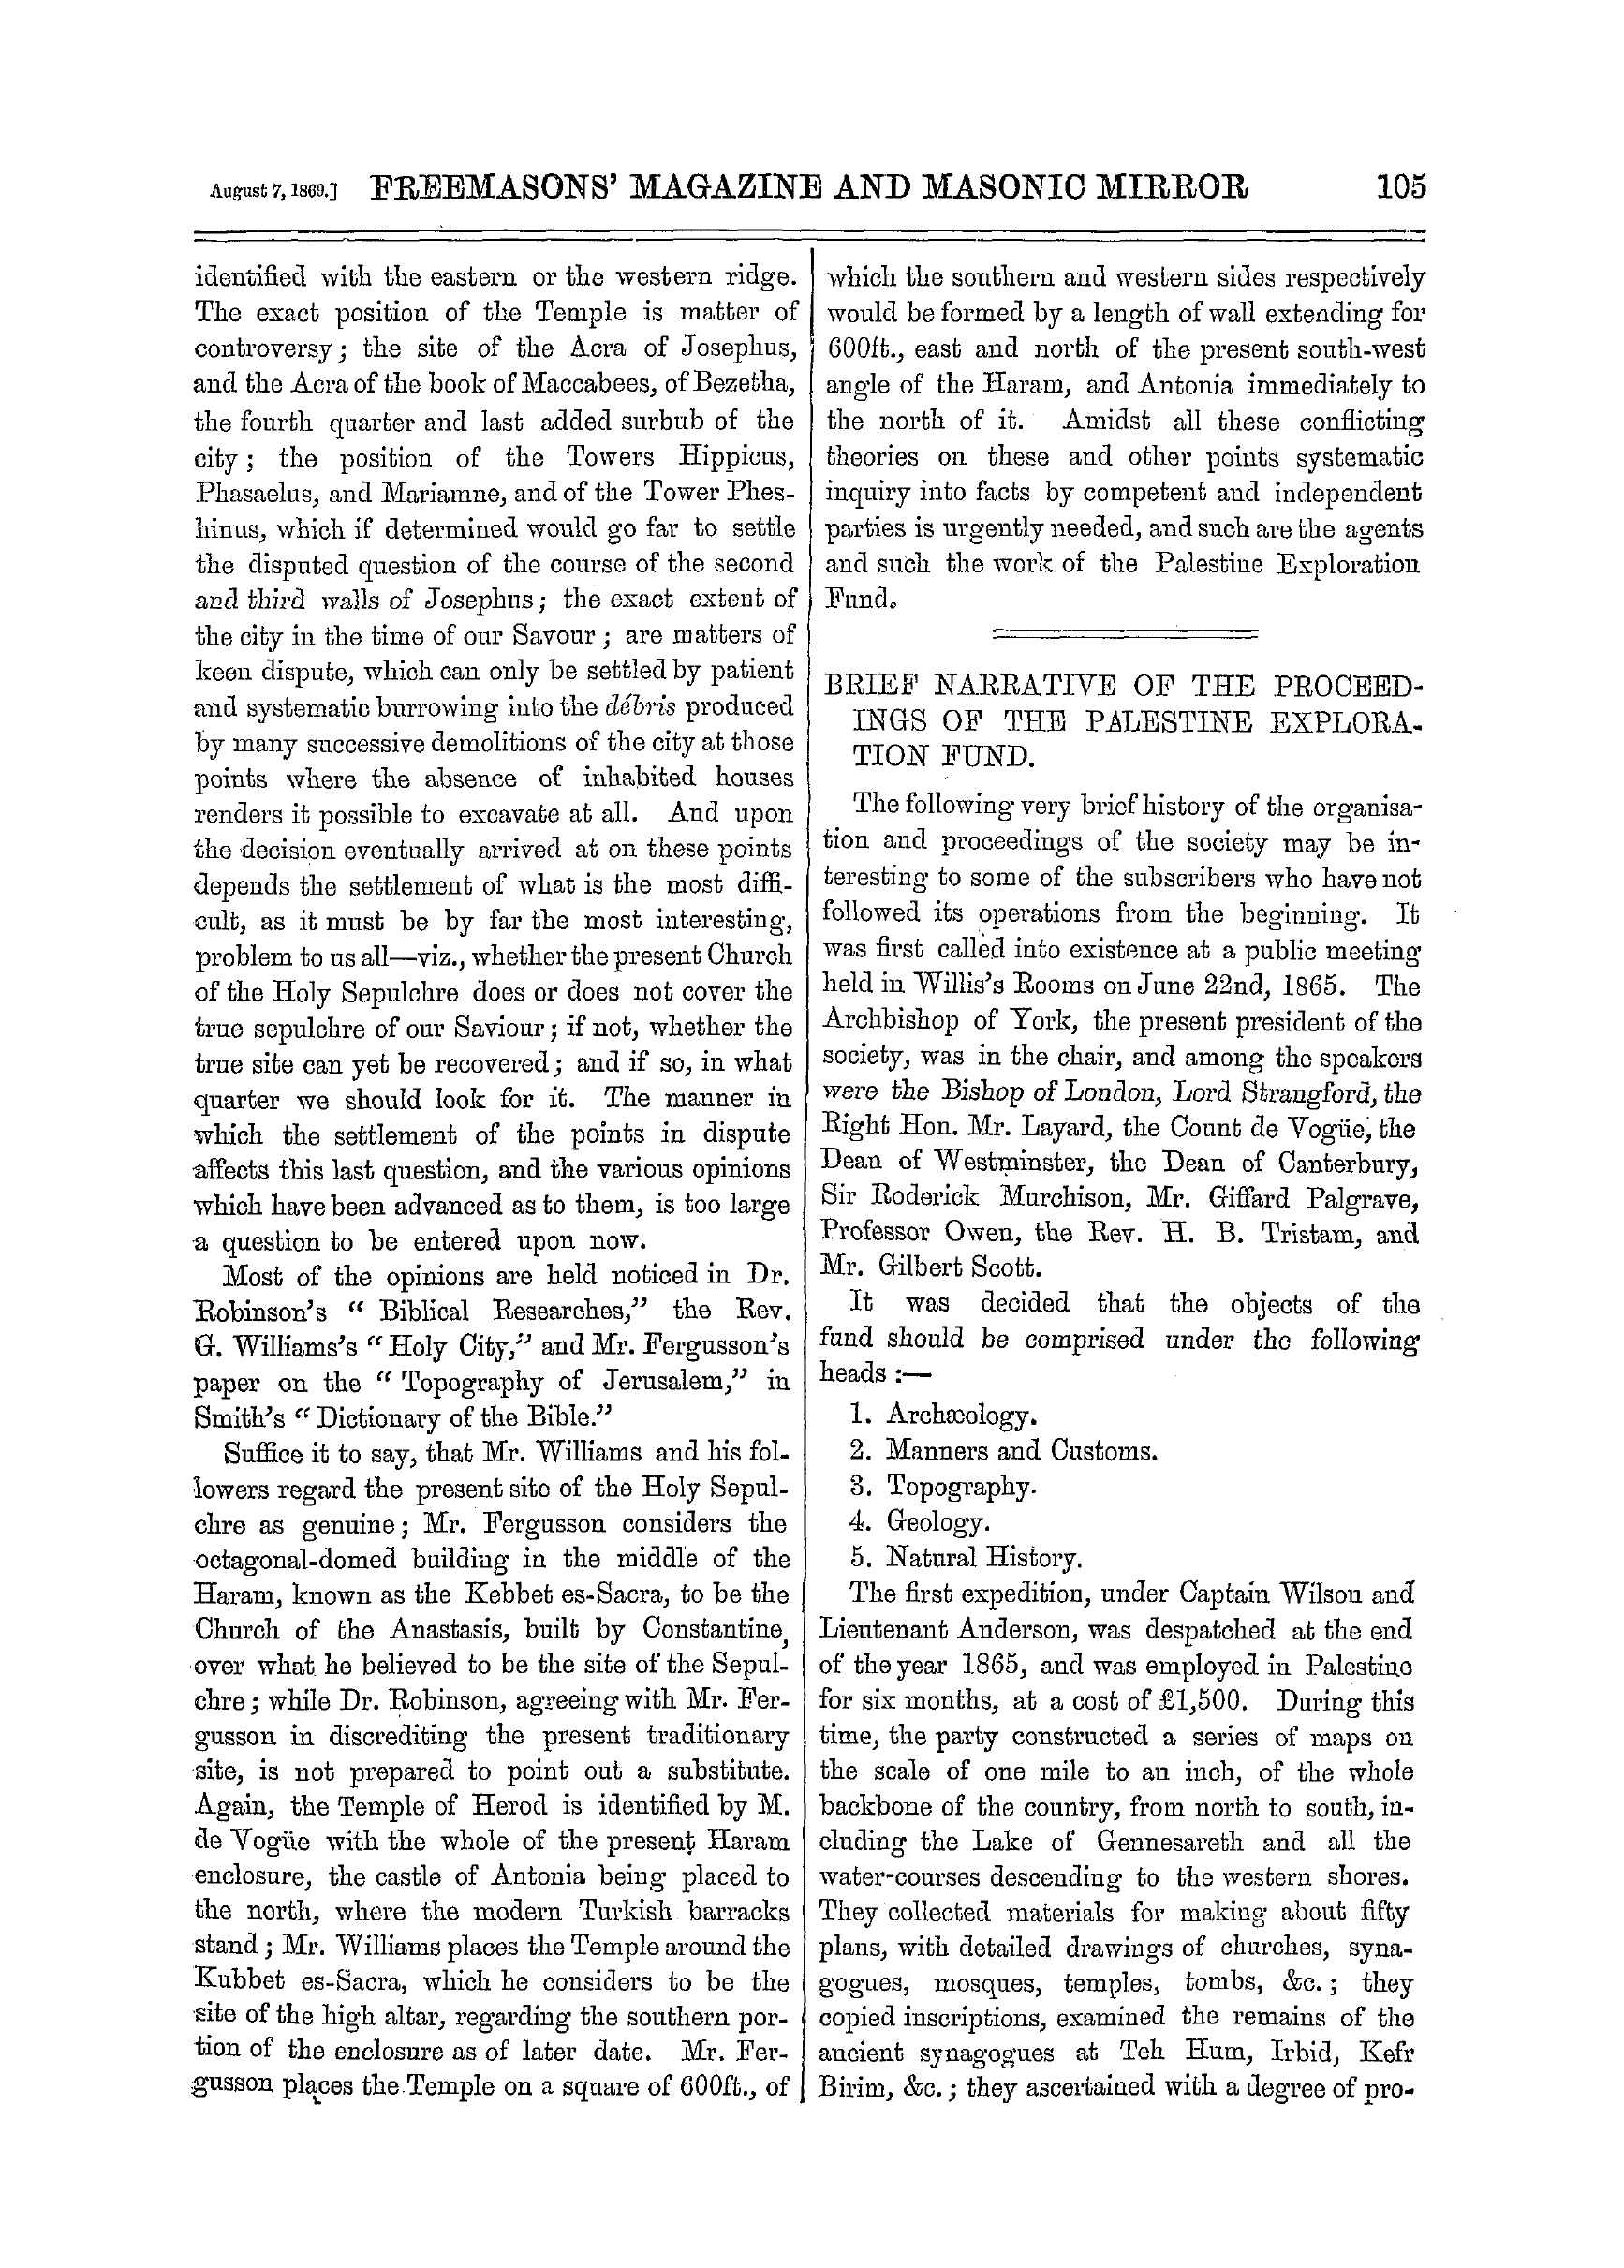 The Freemasons' Monthly Magazine: 1869-08-07: 5